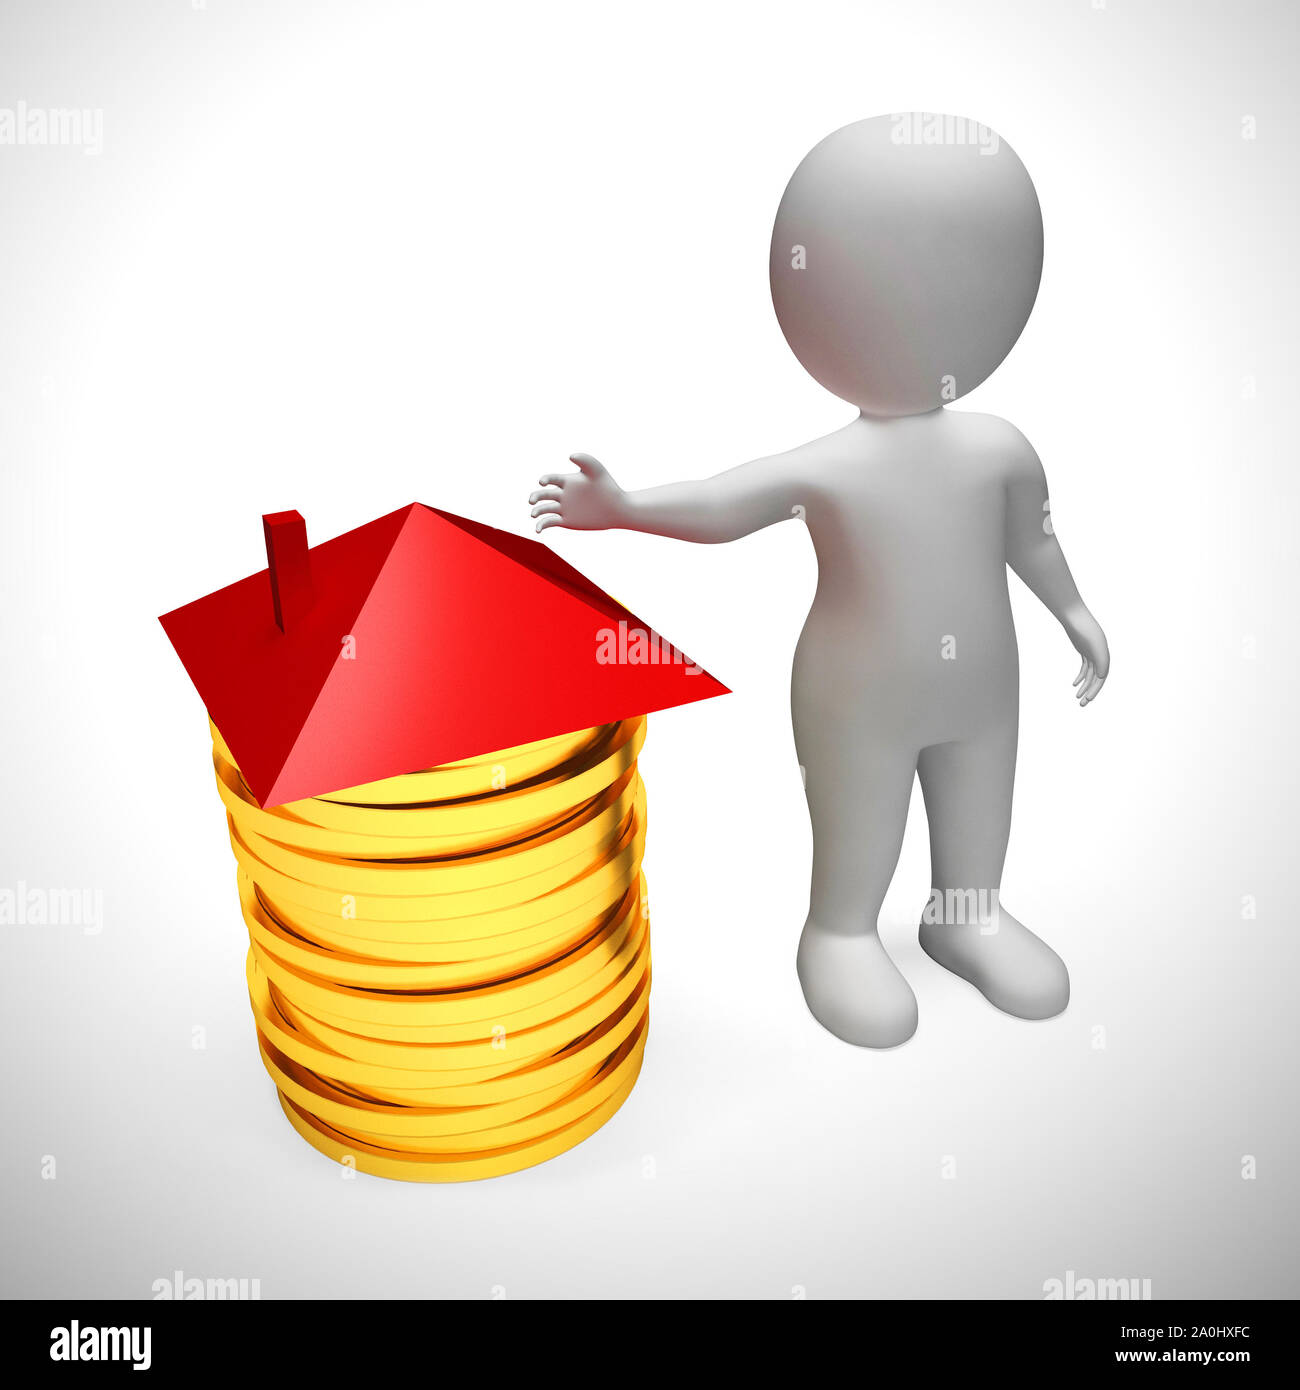 L'enregistrement d'une maison symbole représenté par une pile de pièces. Achat de propriété et la richesse financière - 3d illustration Banque D'Images